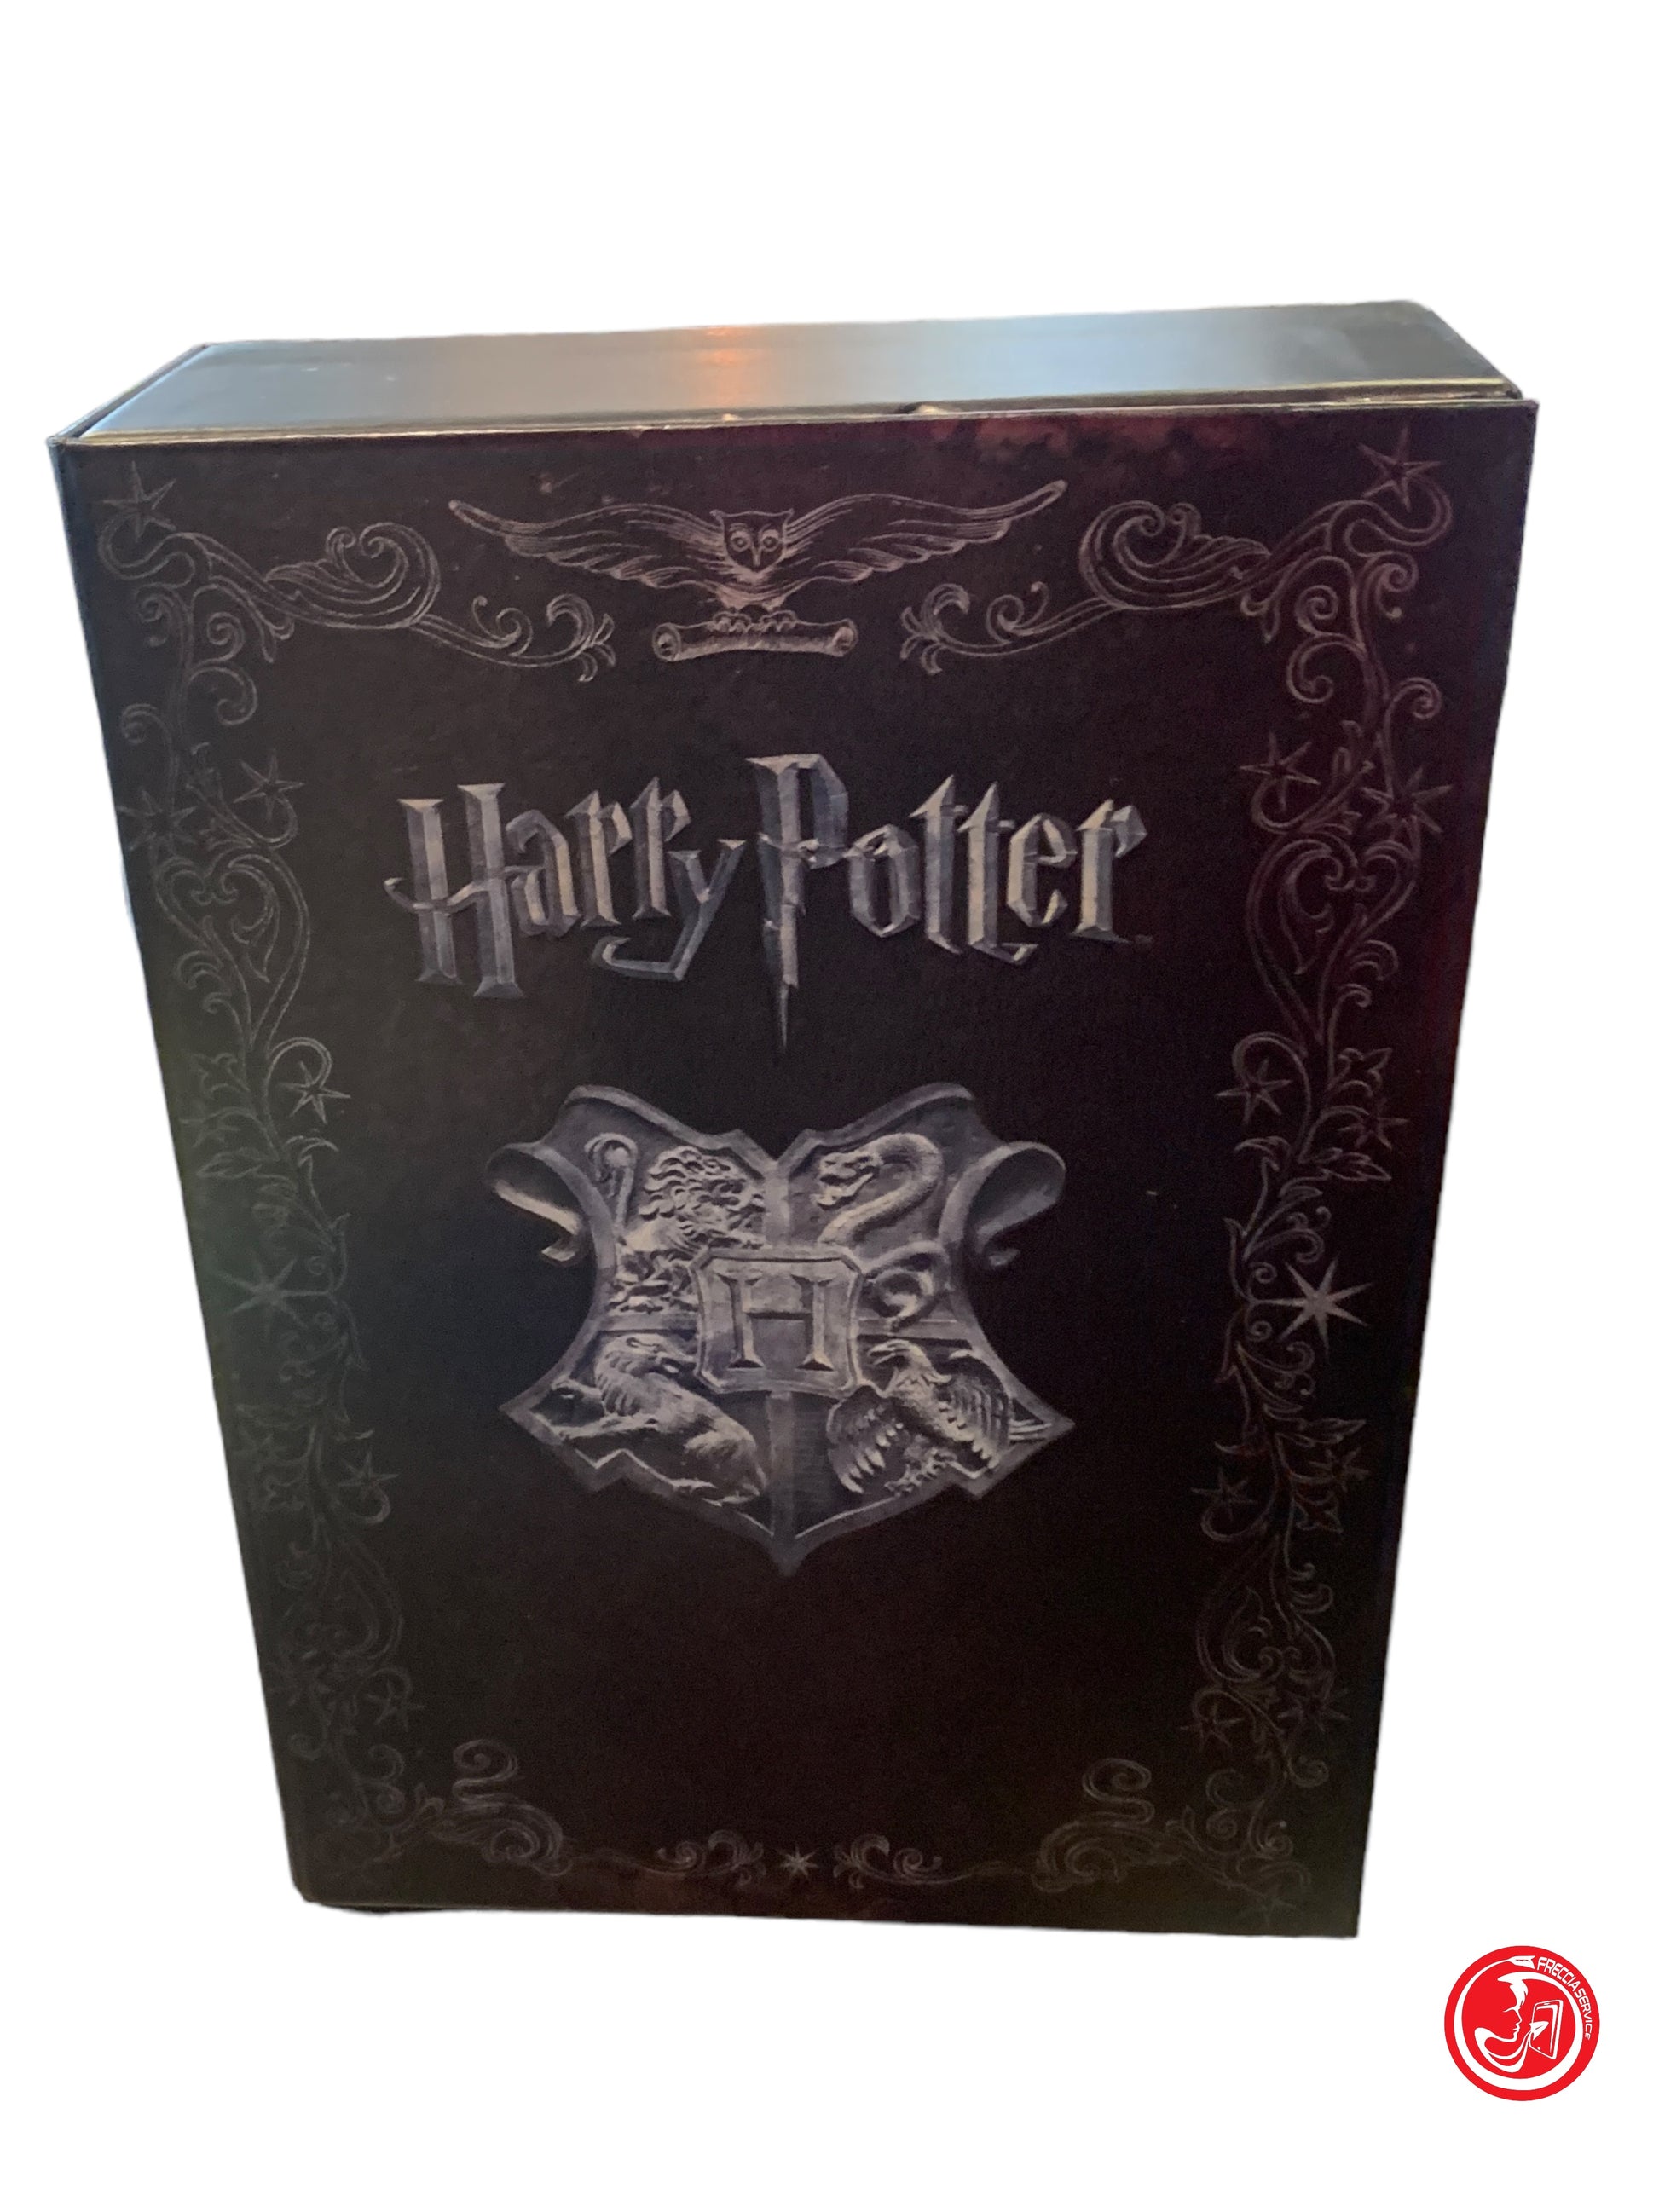 Dvd blue ray cofanetto Harry Potter – FRECCIA SERVICE